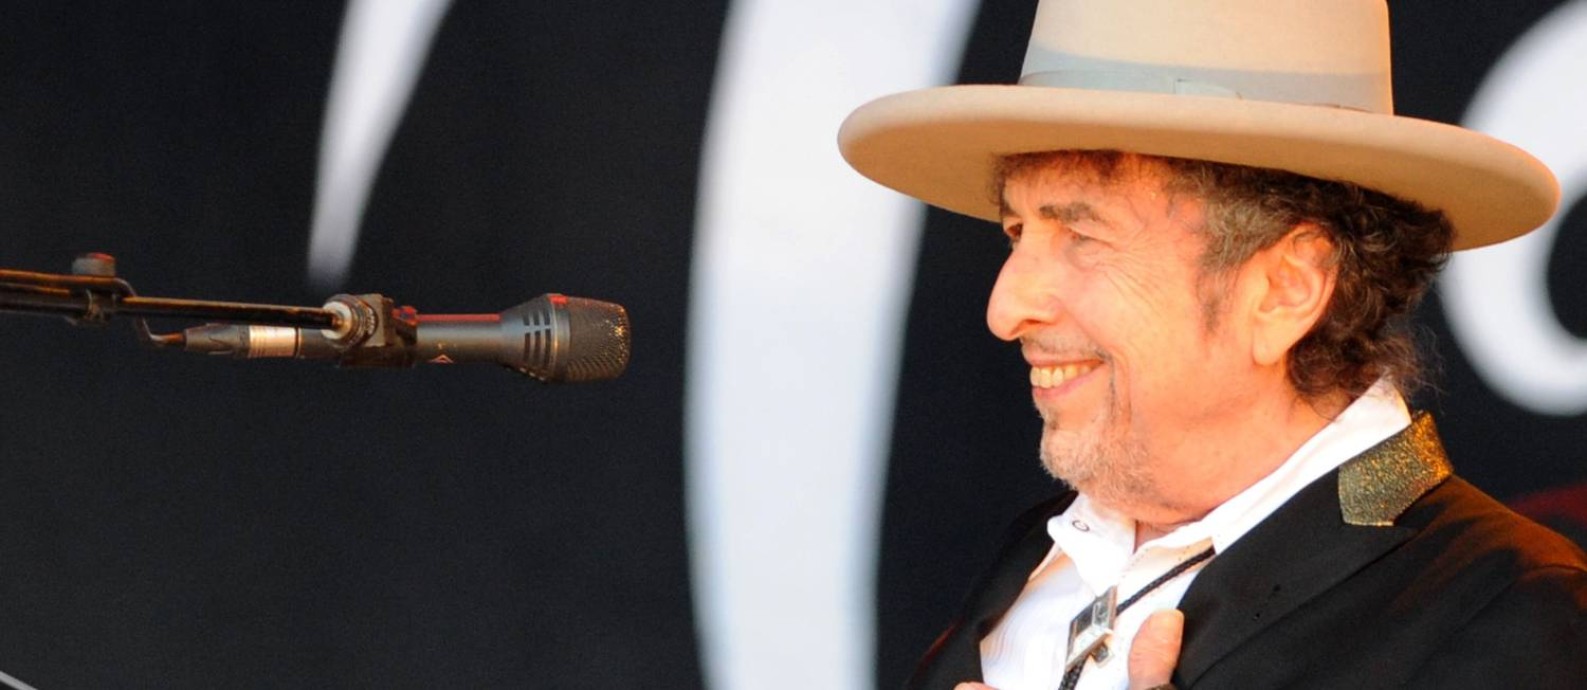 O cantor e compositor Bob Dylan em show em 2012 Foto: FRED TANNEAU / AFP